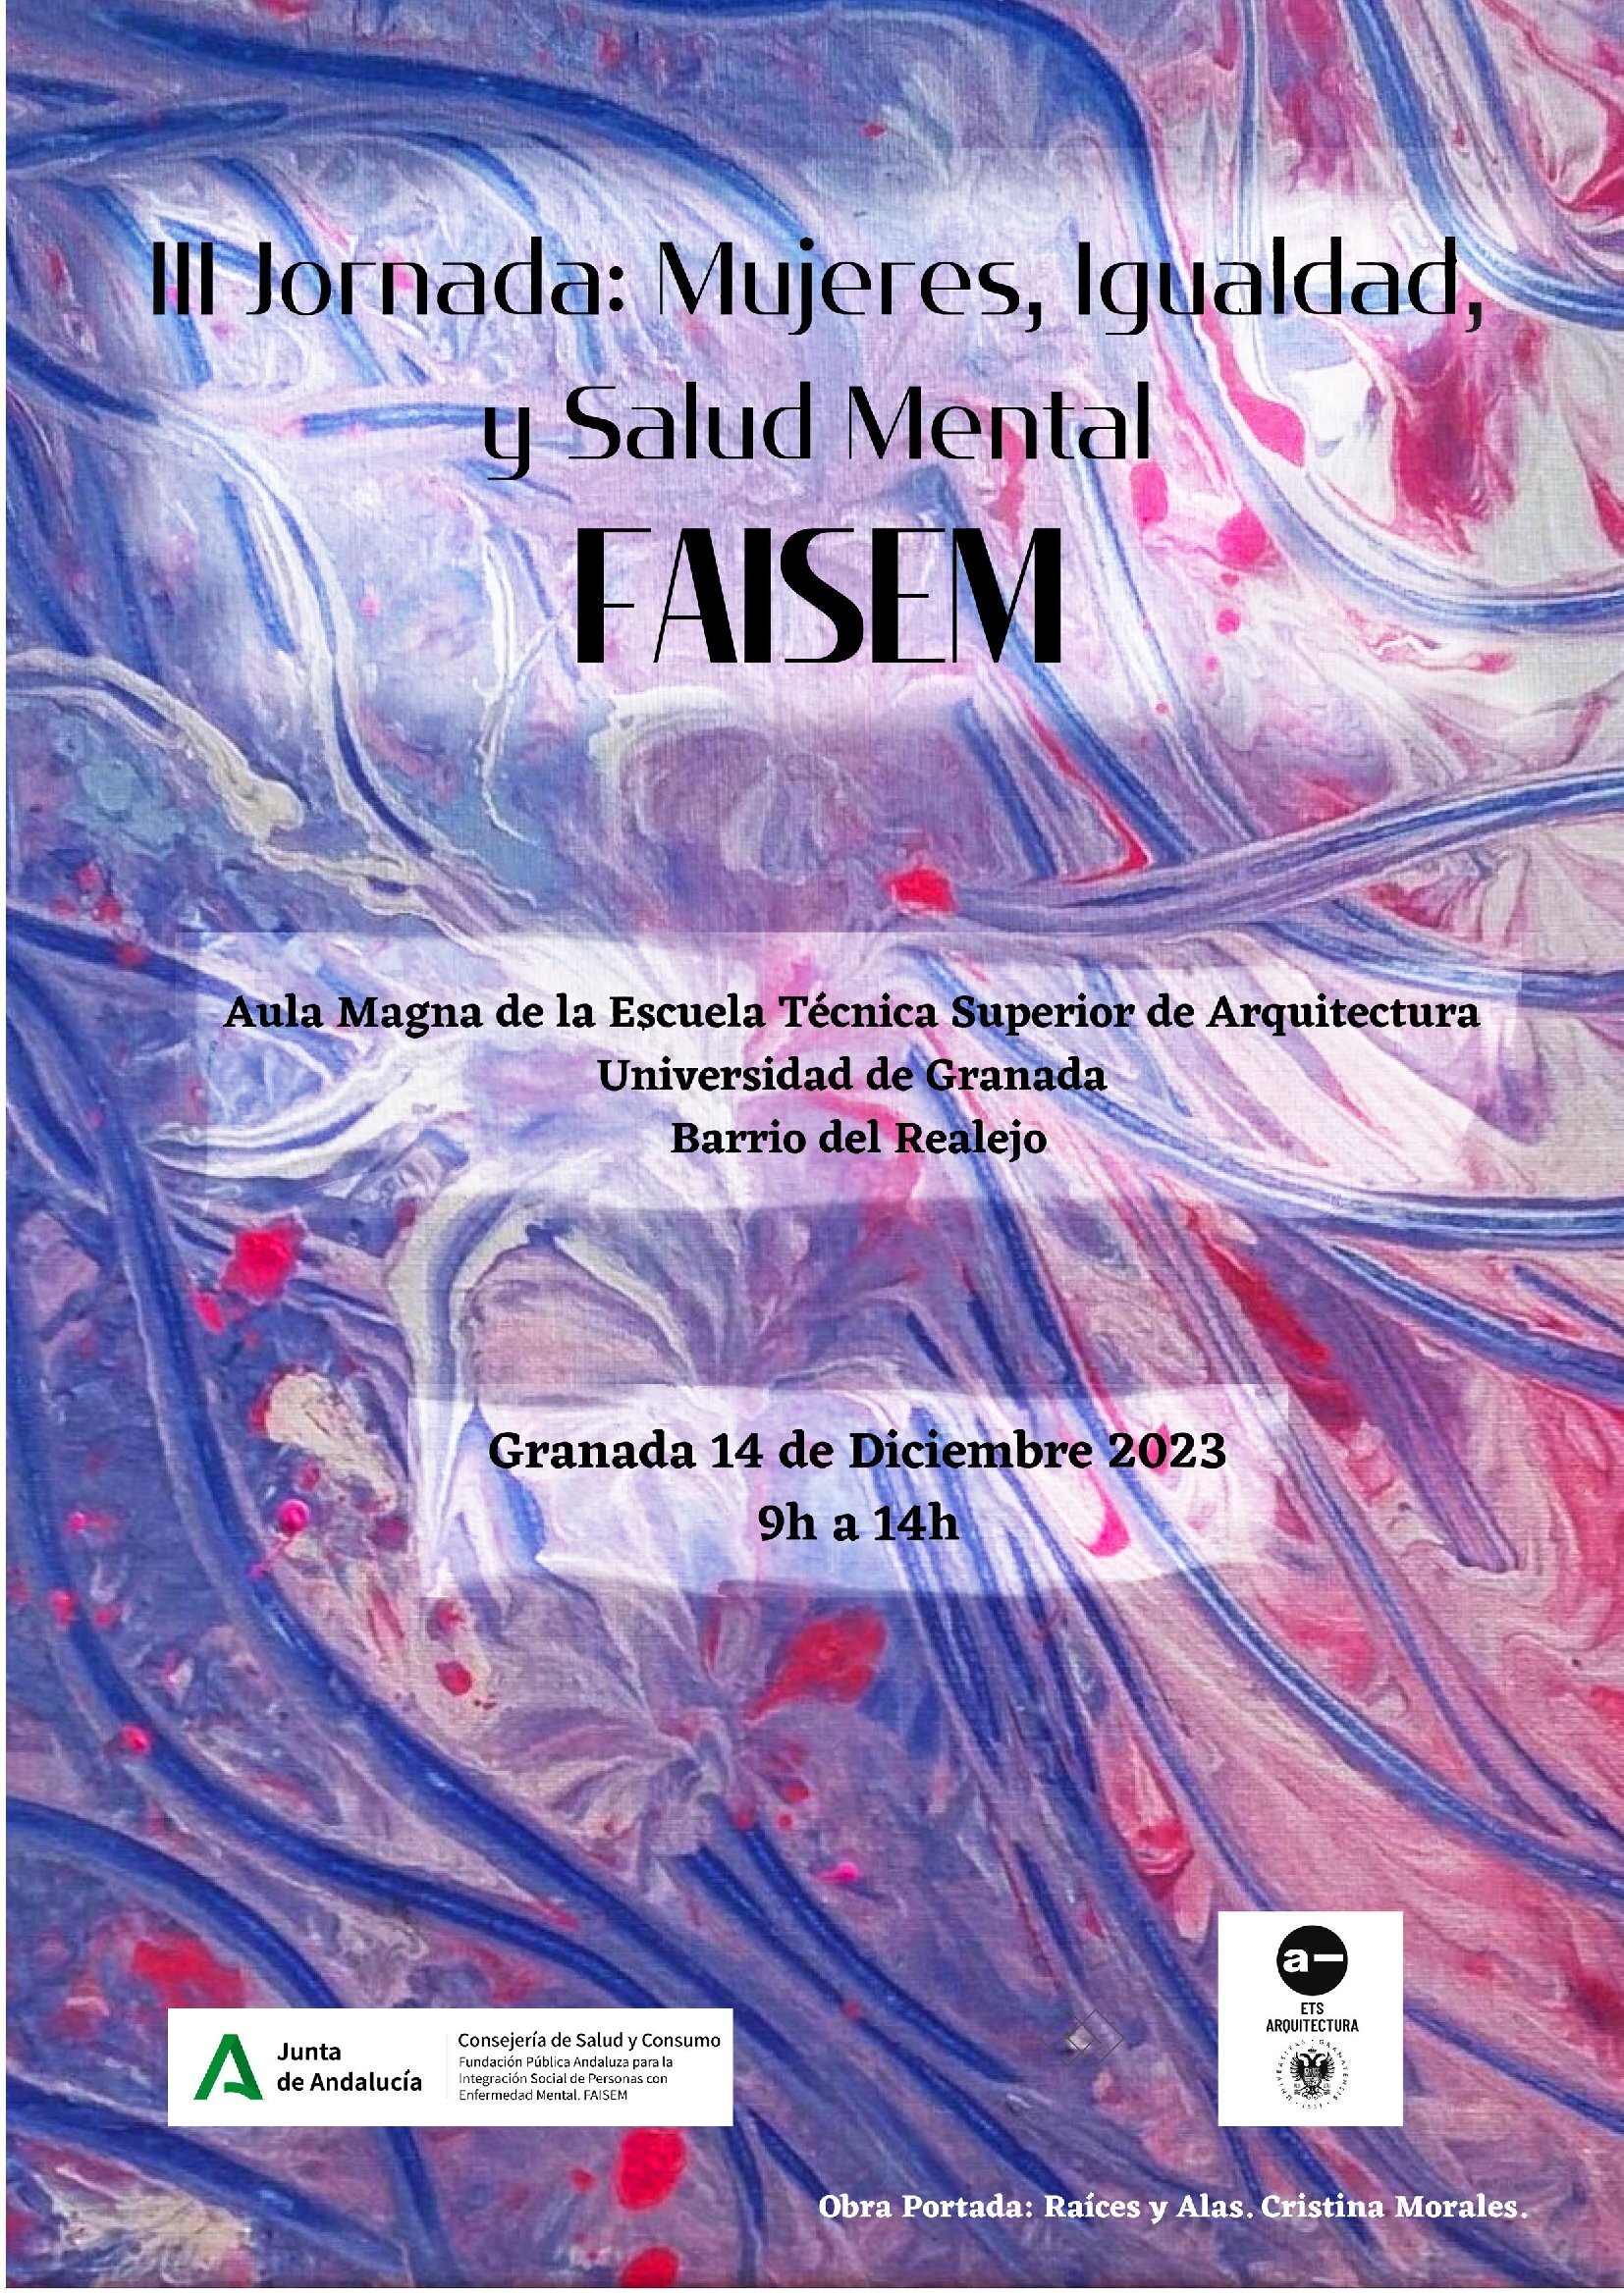 III Jornada Mujeres, Igualdad y Salud Mental de la fundación FAISEM